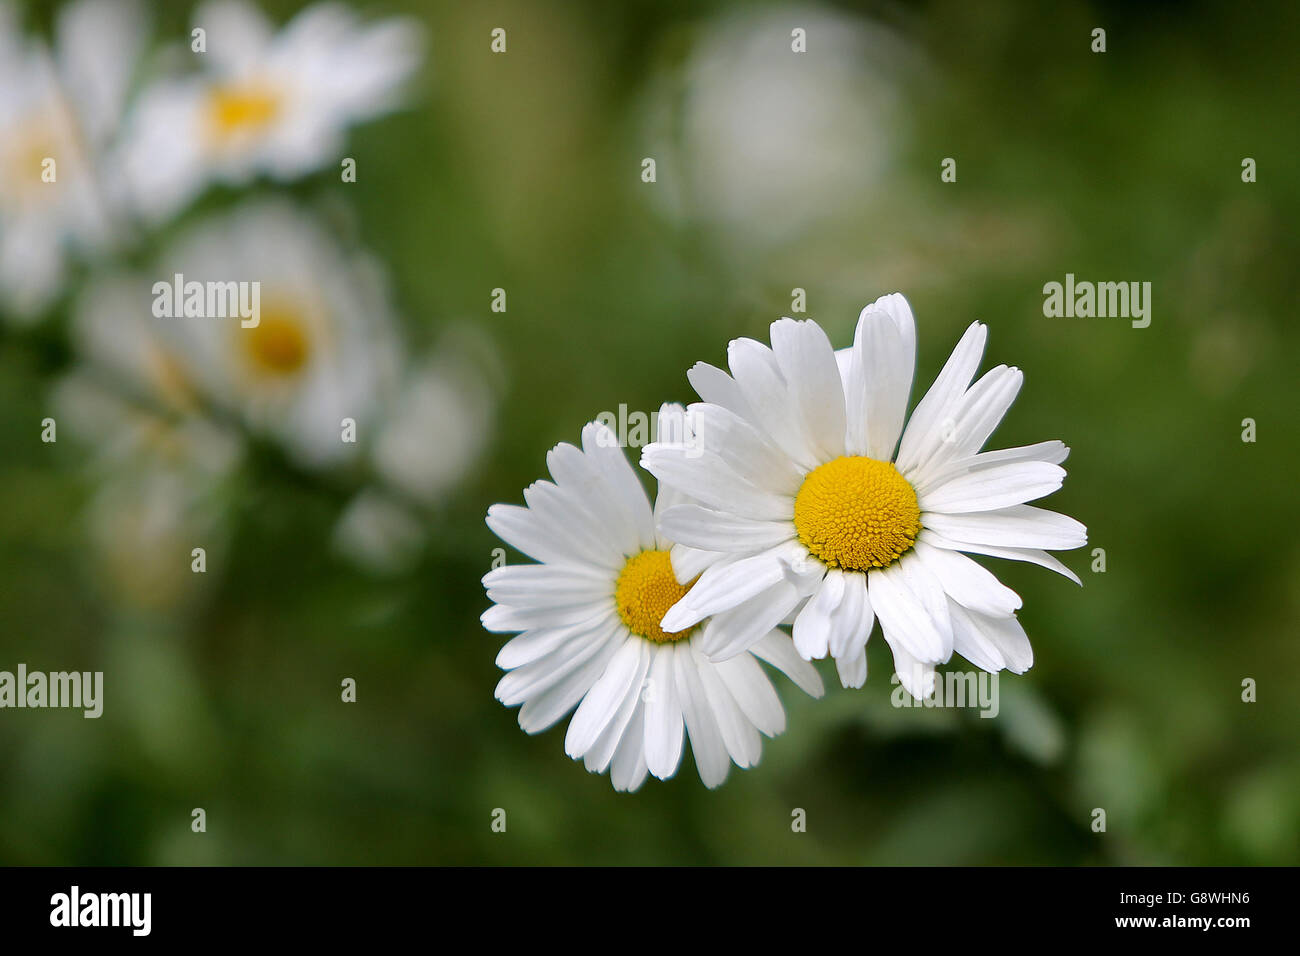 Verdunkelt. Zwei daisy flowers Kampf für Licht mit anderen Gänseblümchen im Hintergrund. Stockfoto